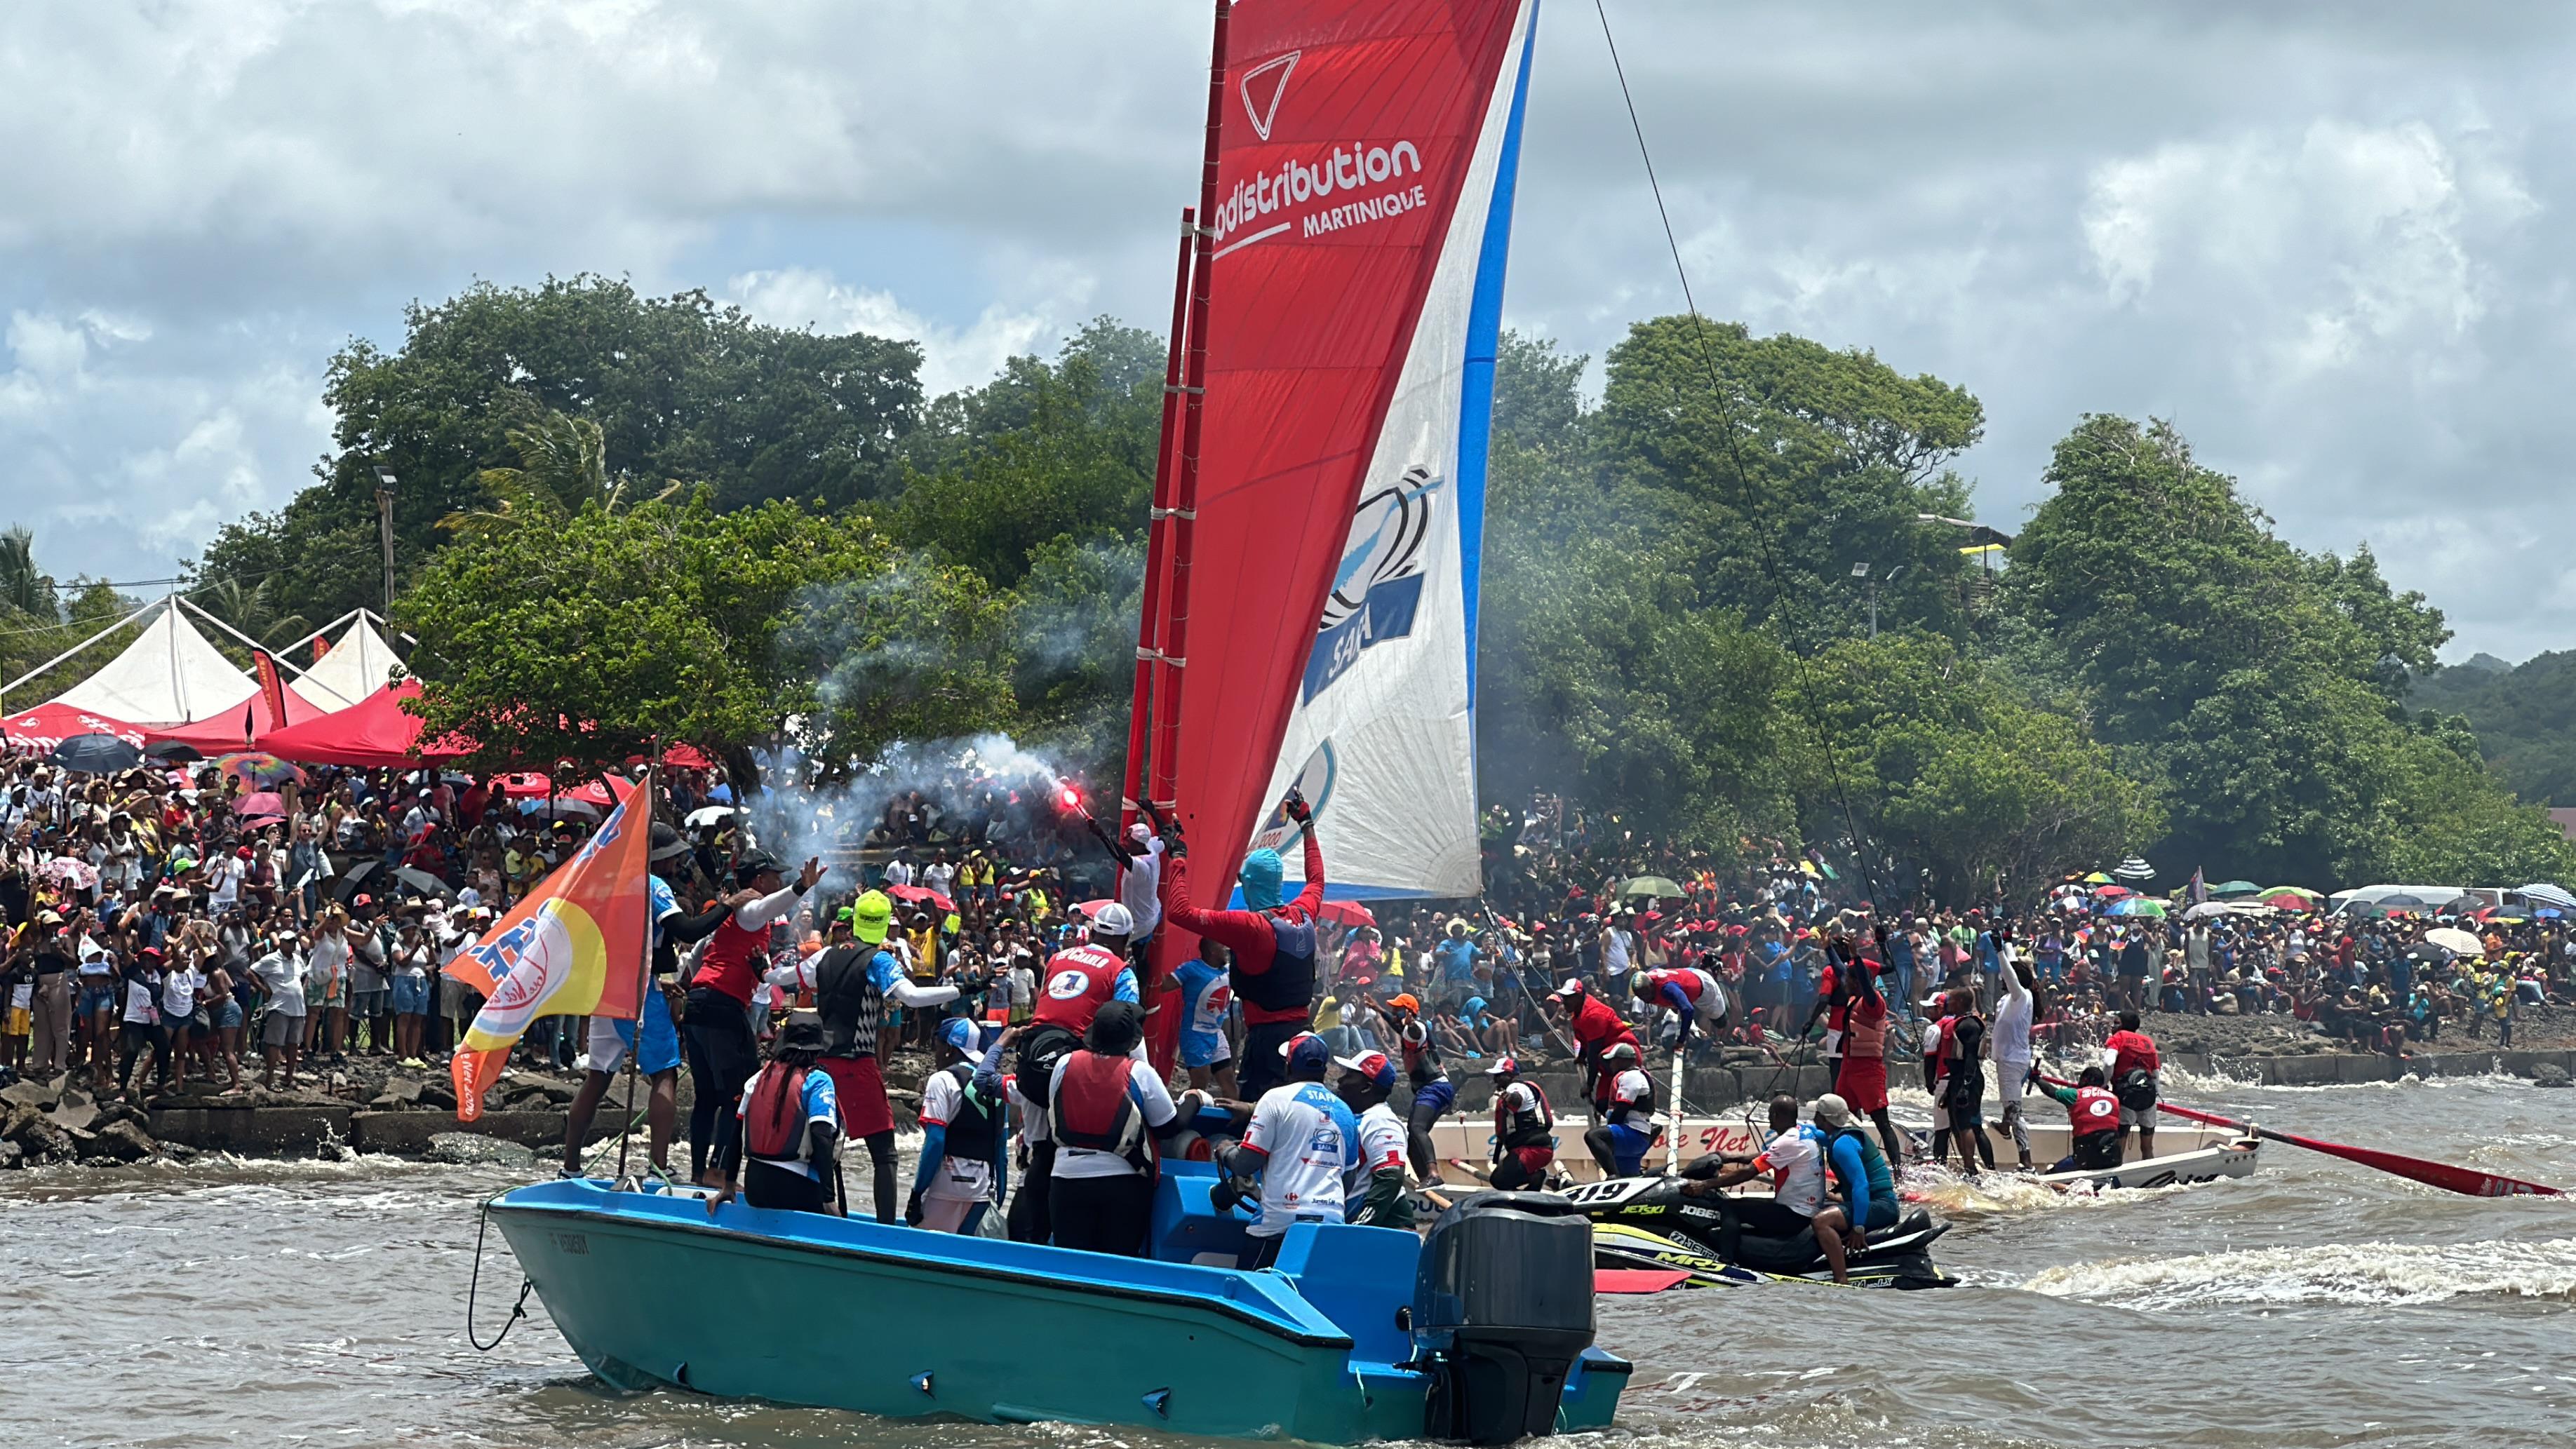     Tour des Yoles de Martinique : « On s’était fixés l’objectif de tout gagner cette année » (Diany Rémy, Sara - Autodistribution)

